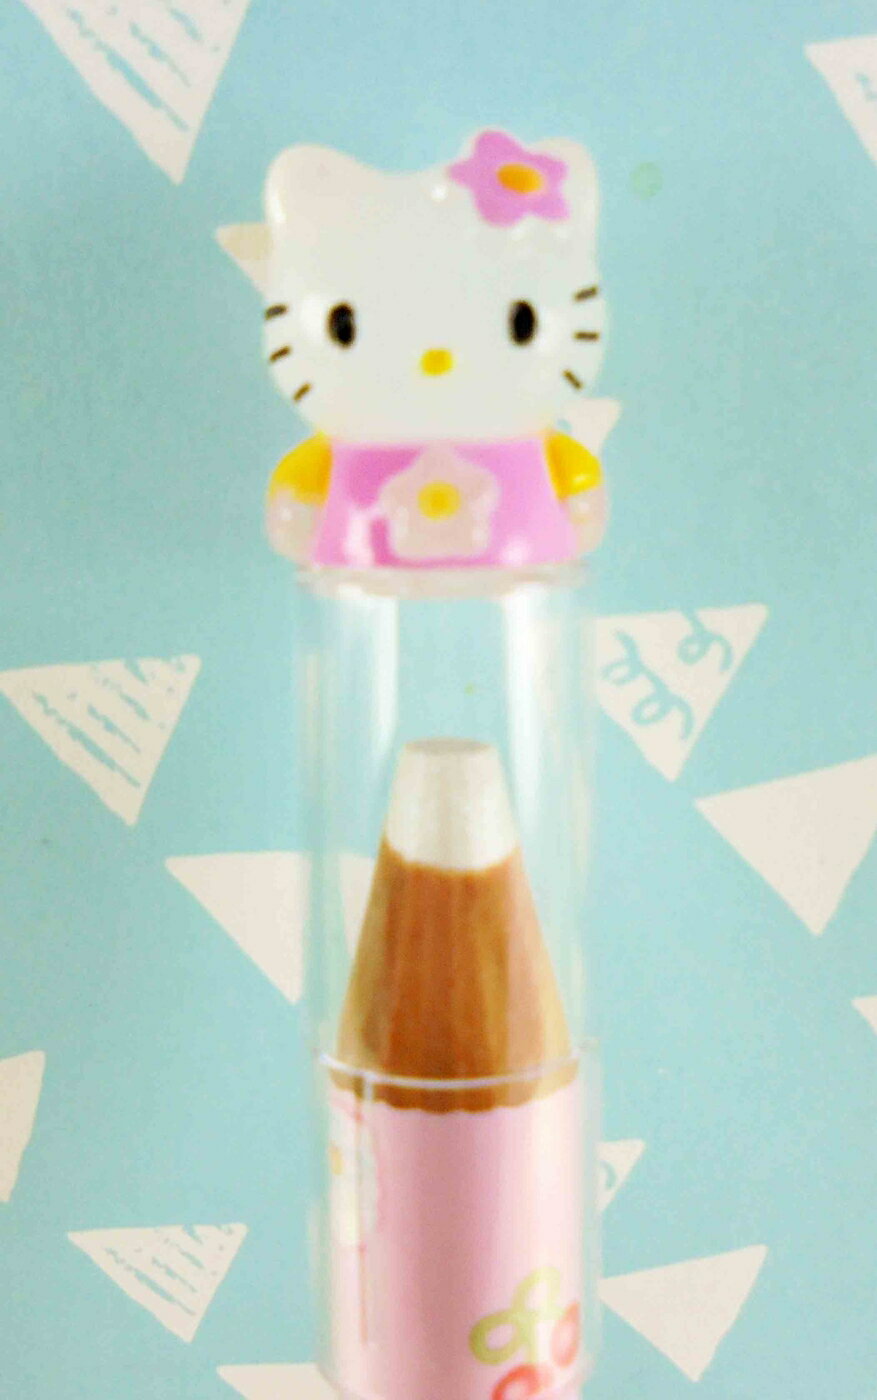 【震撼精品百貨】Hello Kitty 凱蒂貓 KITTY眼影筆-銀白色筆芯 震撼日式精品百貨